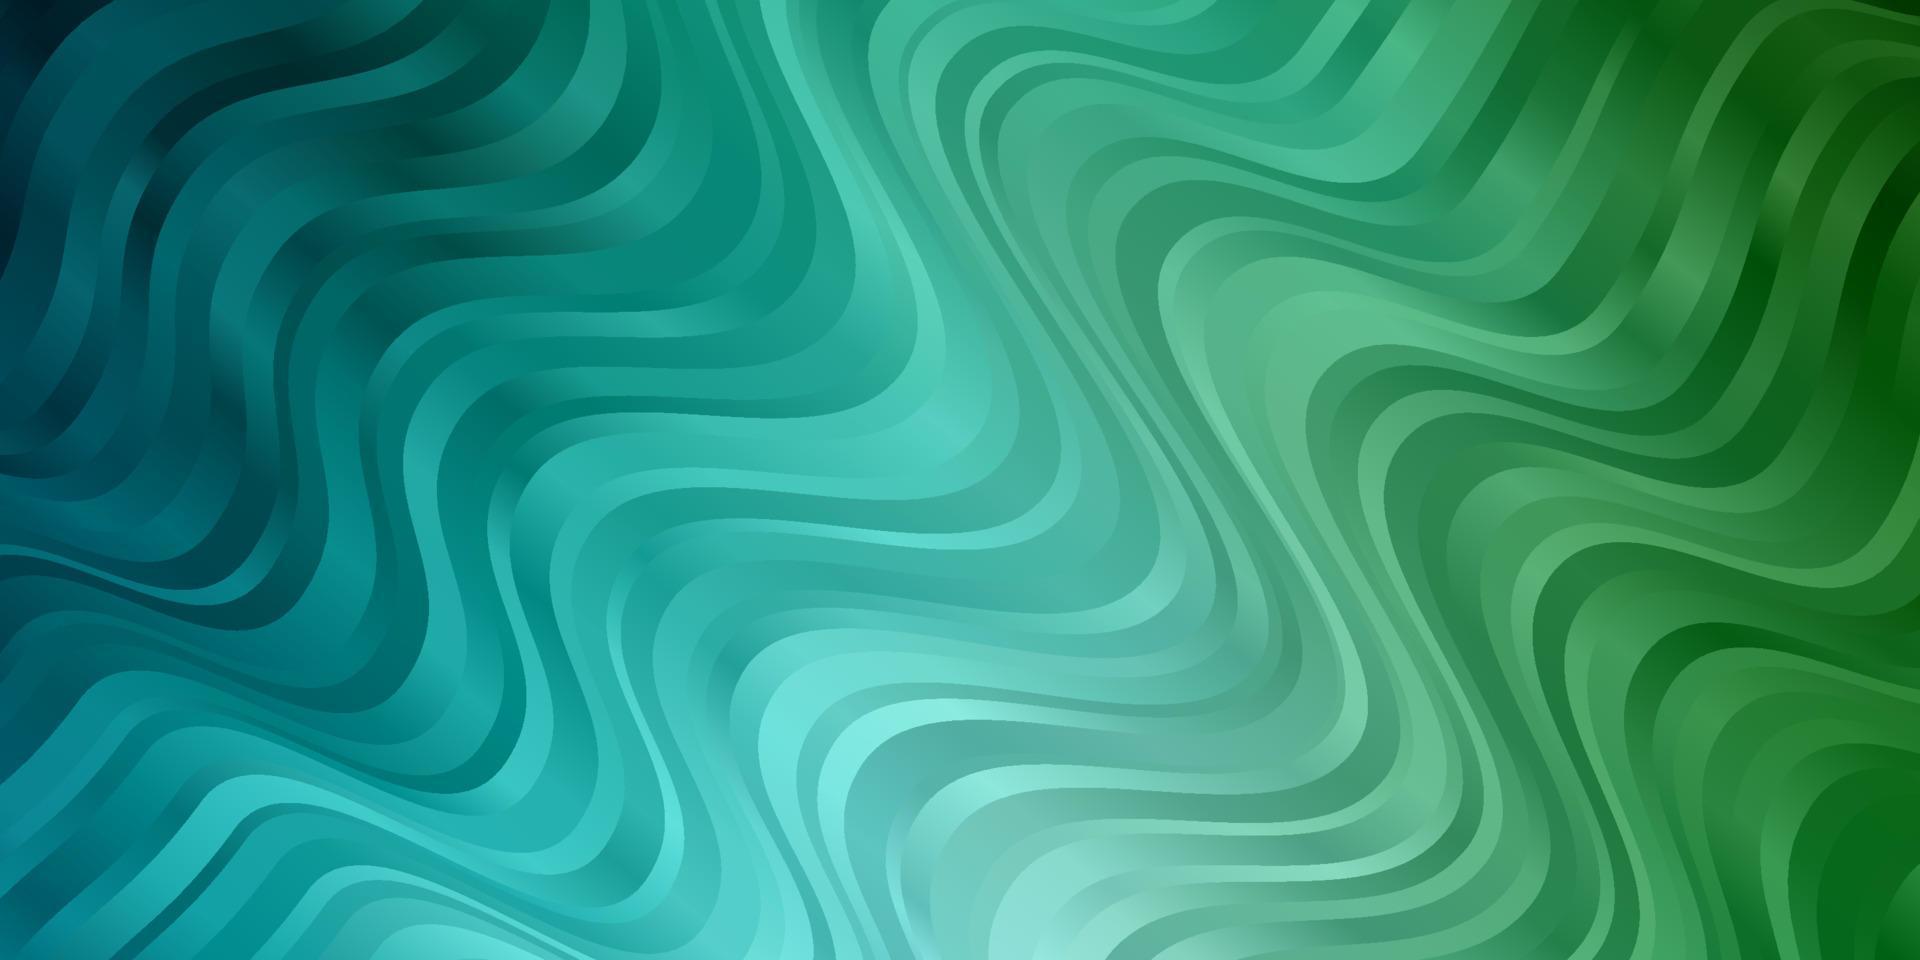 ljusblå, grön vektormall med snygga linjer. vektor